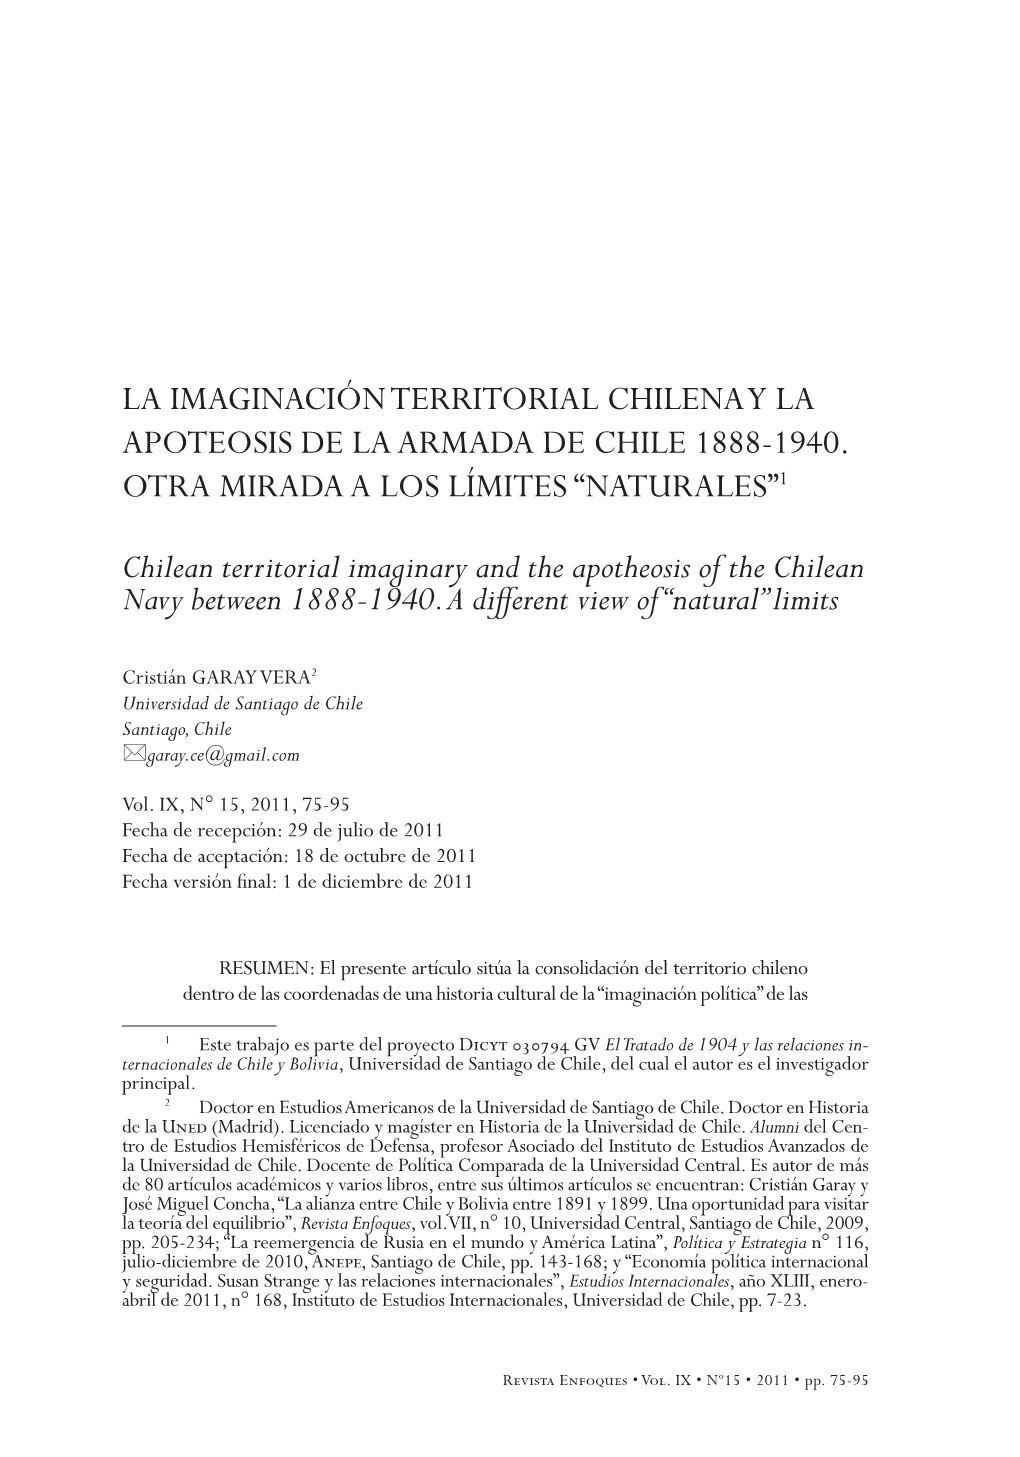 La Imaginación Territorial Chilena Y La Apoteosis De La Armada De Chile 1888-1940 75